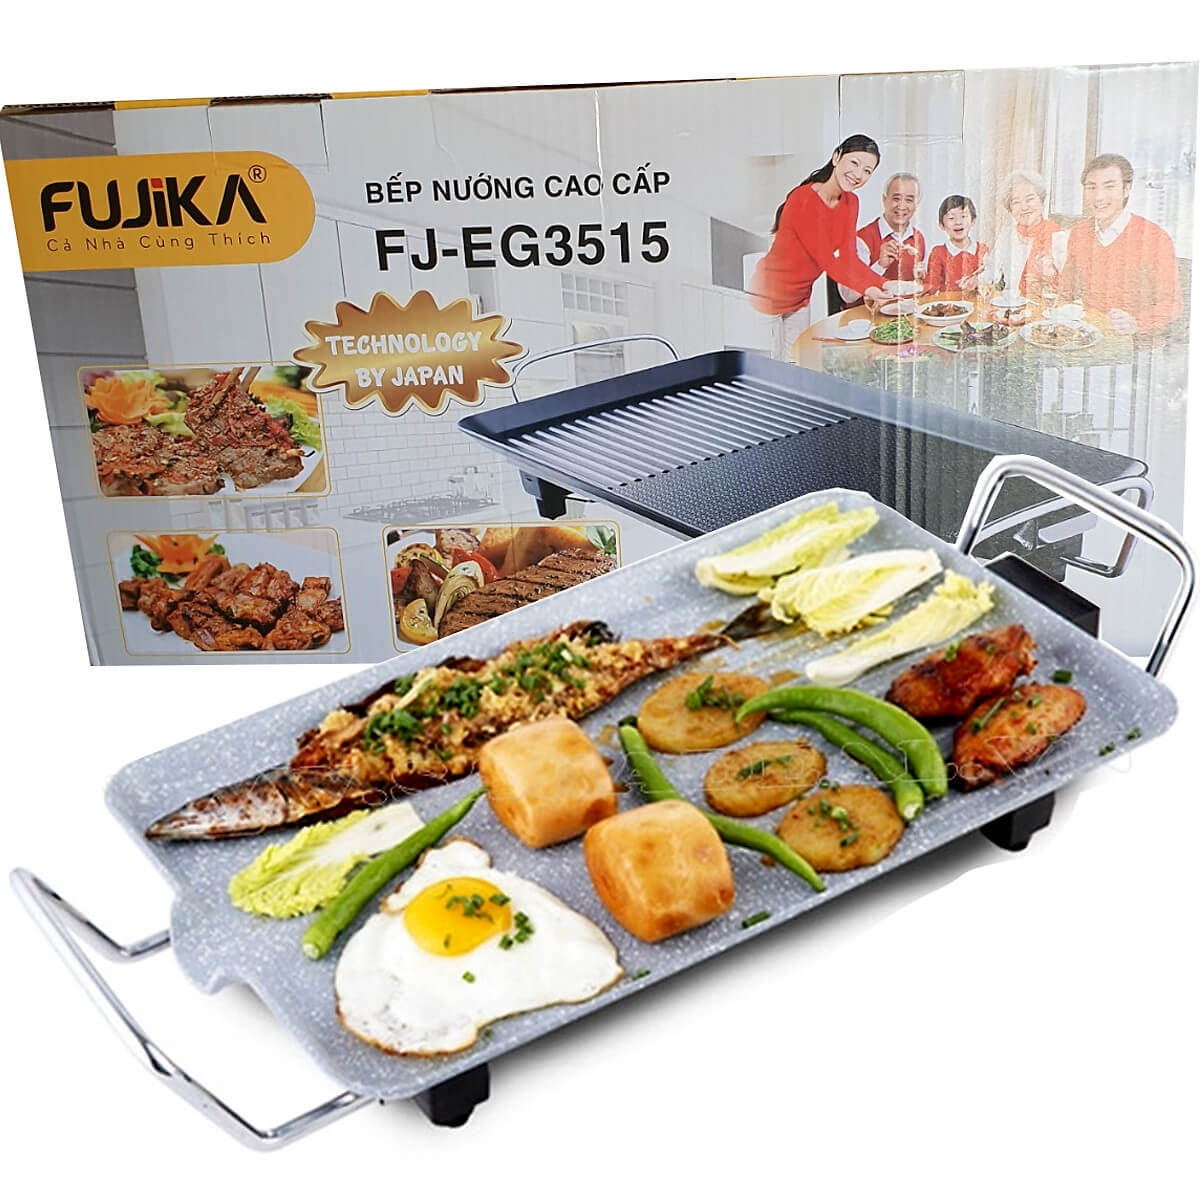 Bếp Nướng Điện Fujika FJ-EG3515 1